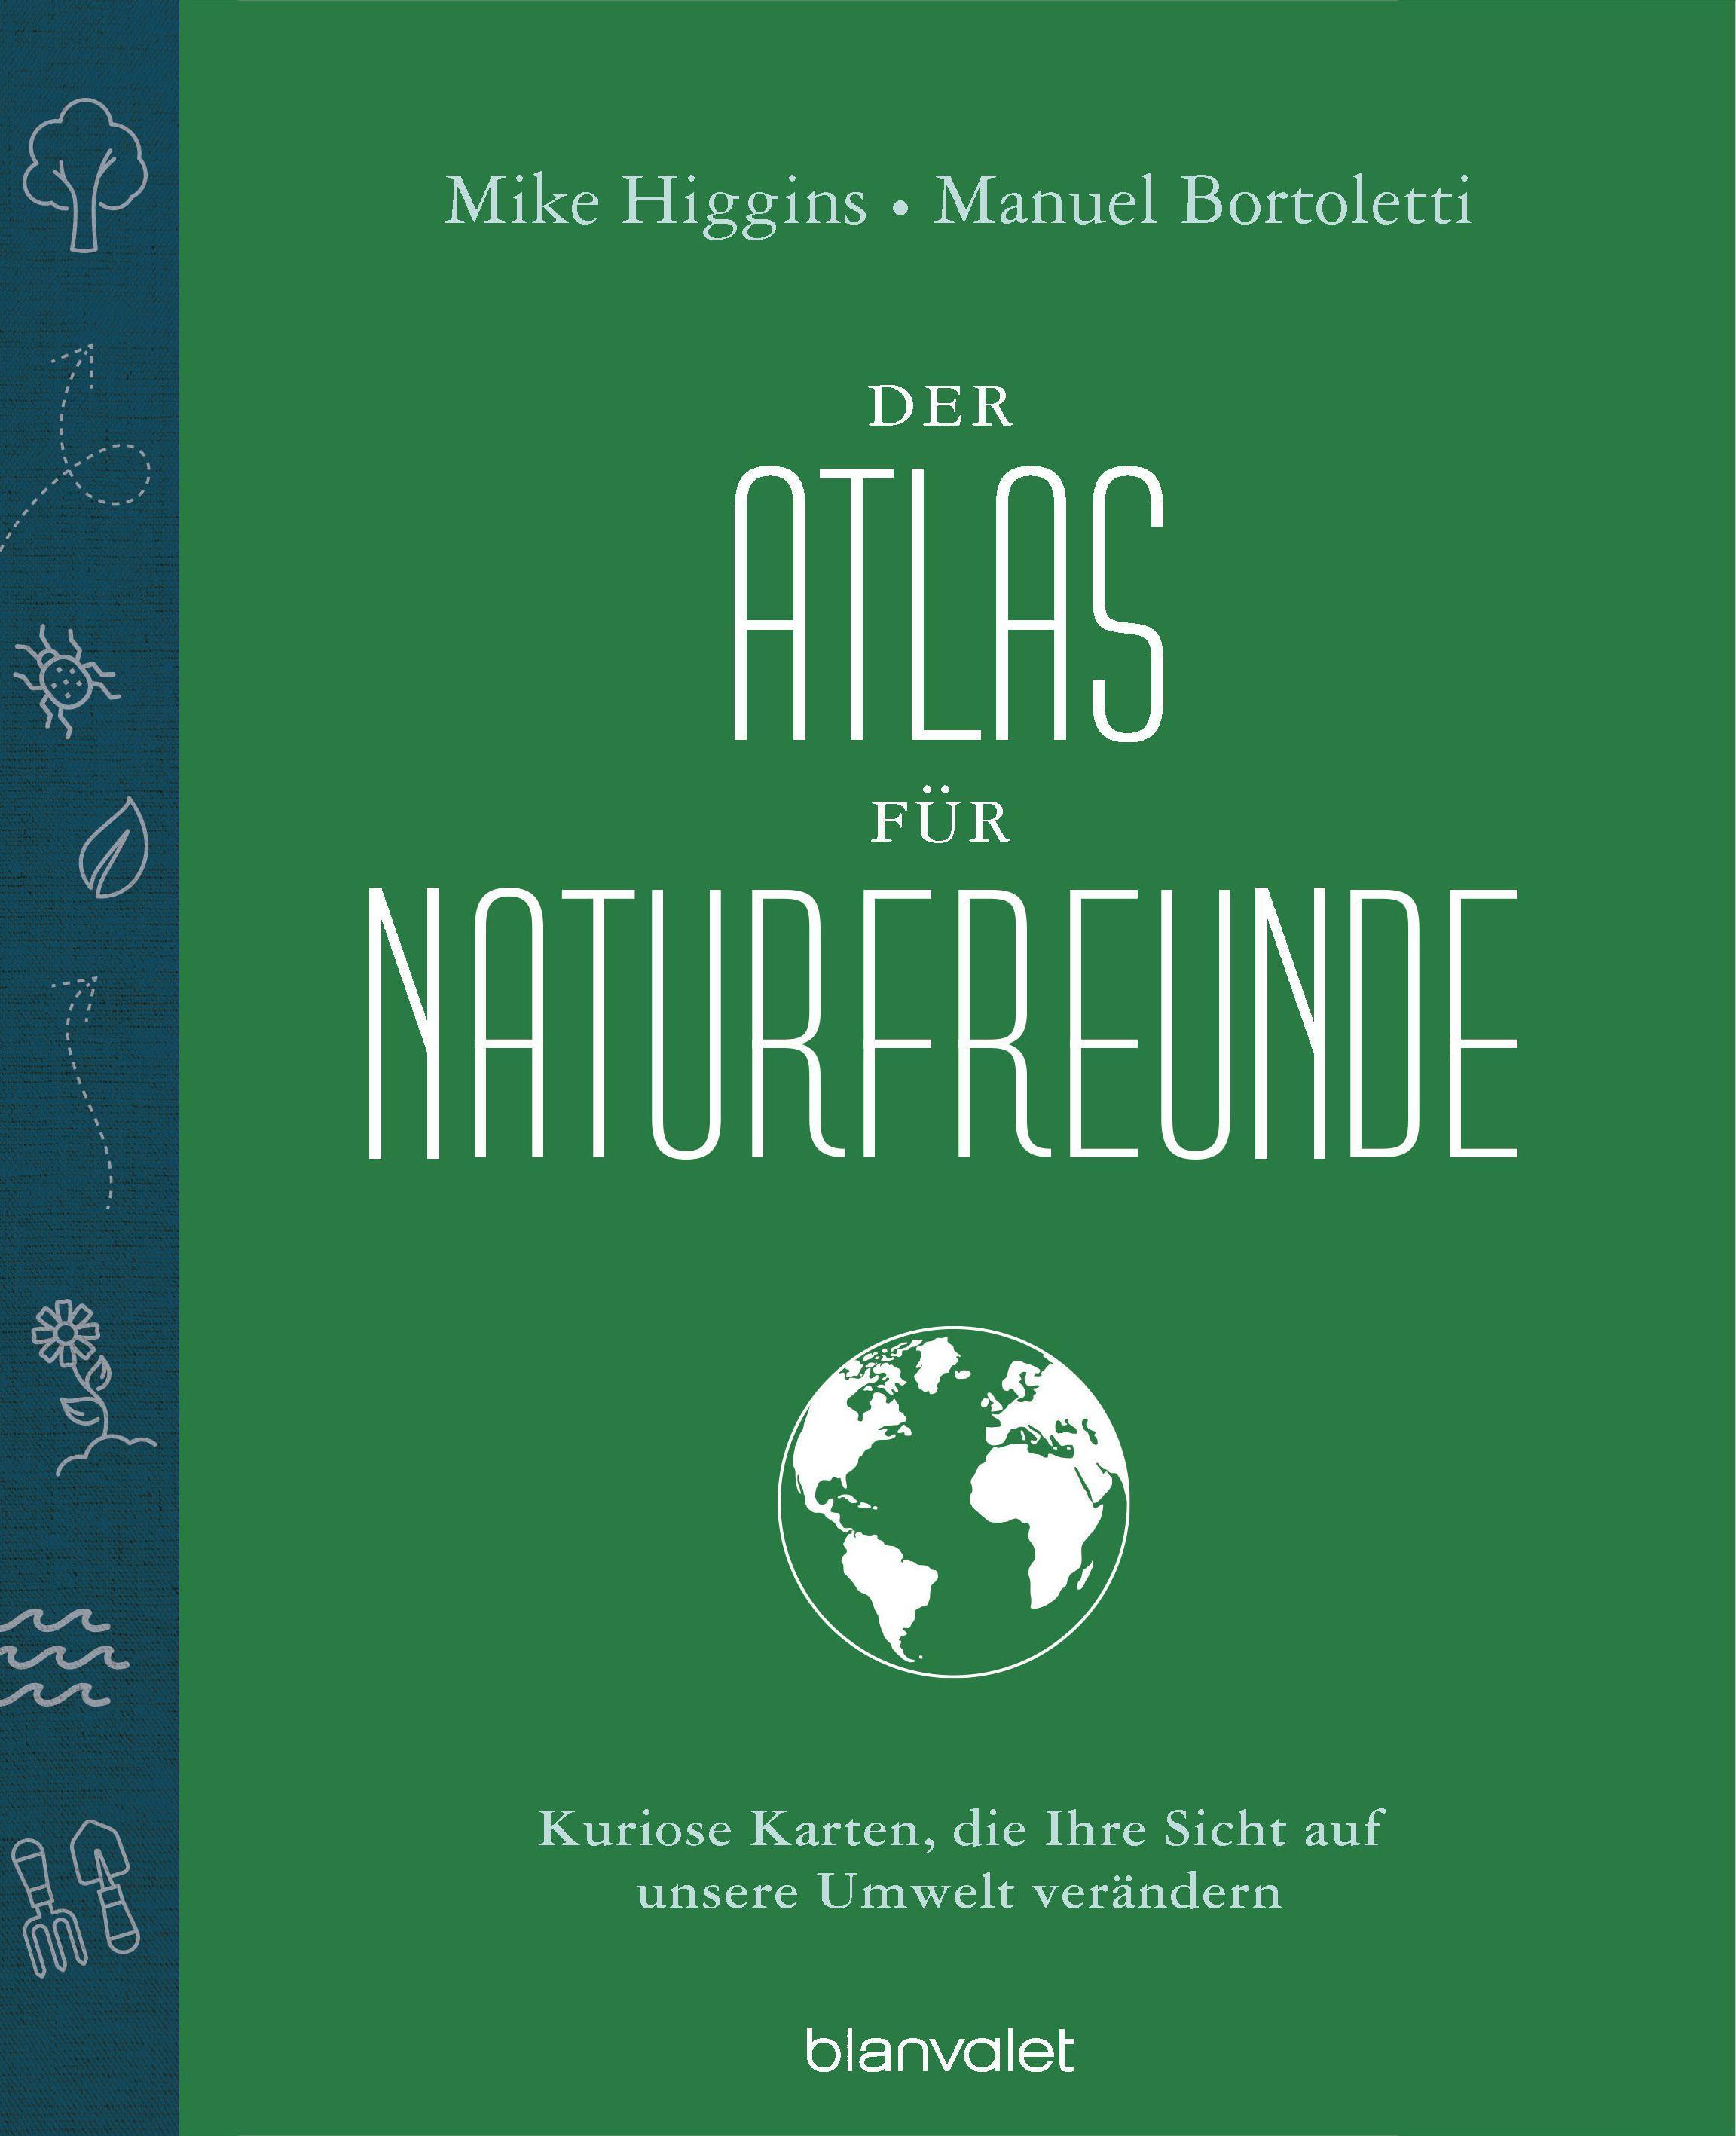 Der Atlas für Naturfreunde Kuriose Karten, die Ihre Sicht auf unsere Umwelt verändern